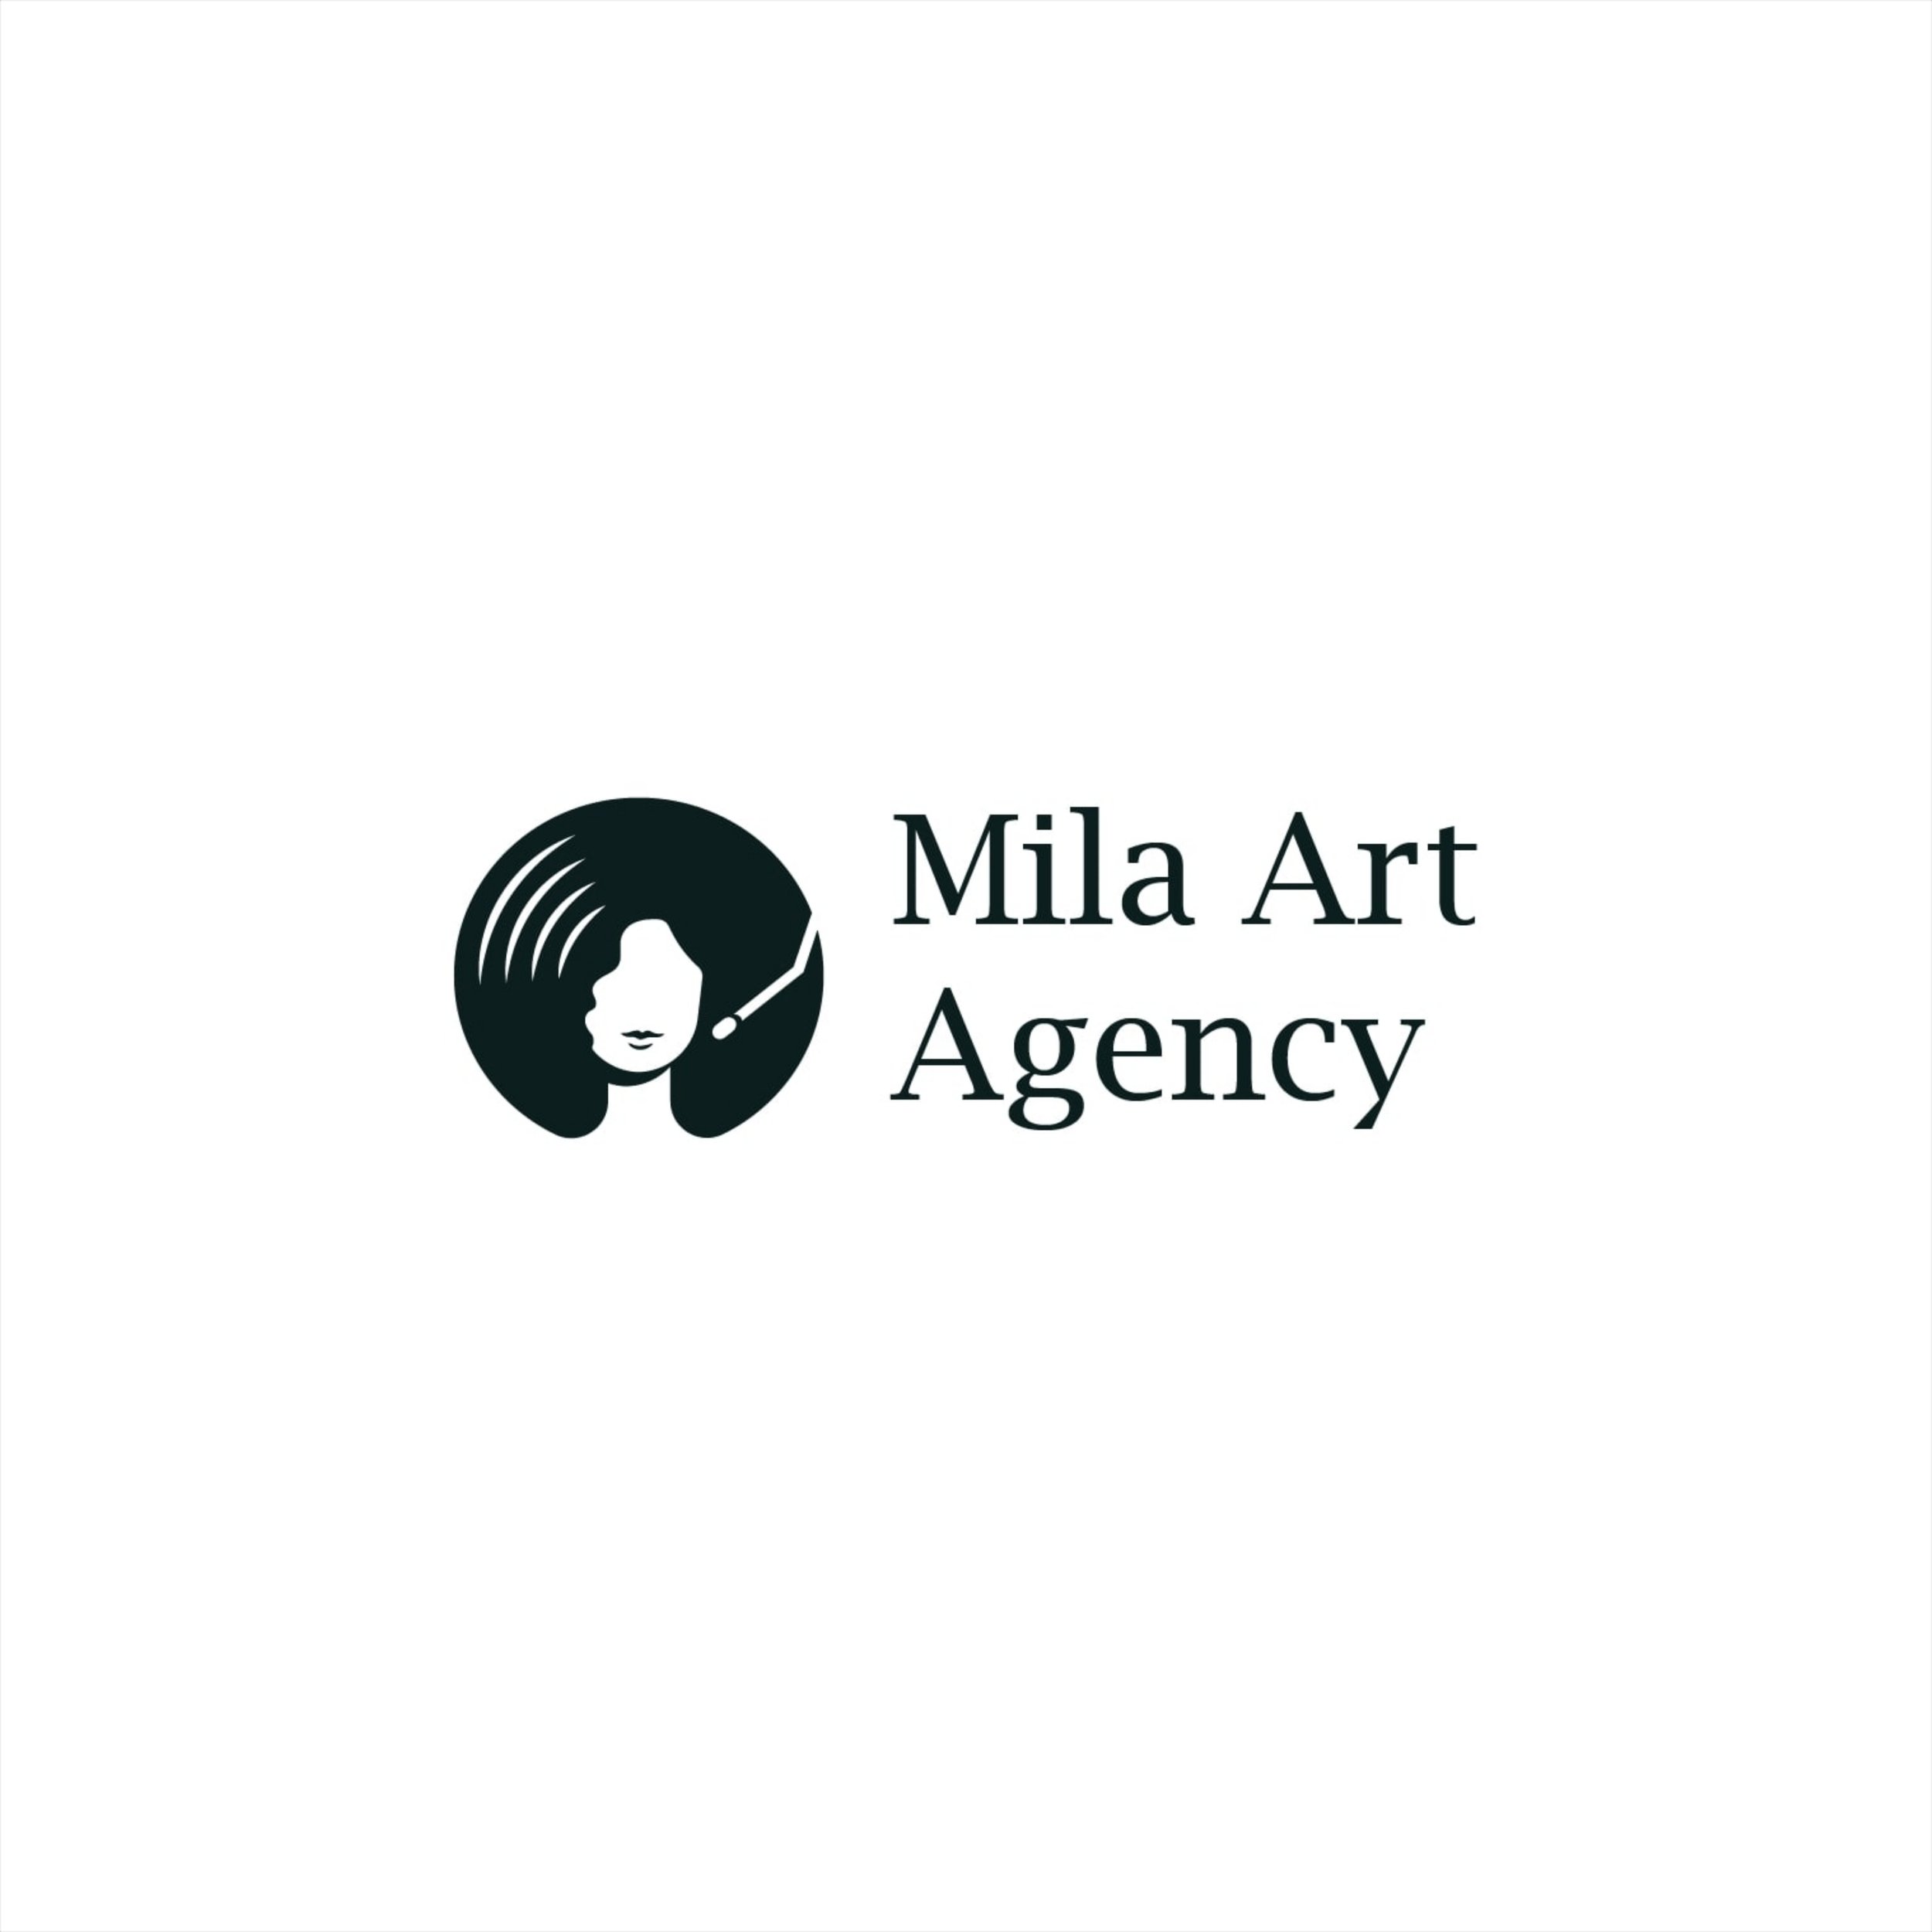 Mila Art Agency